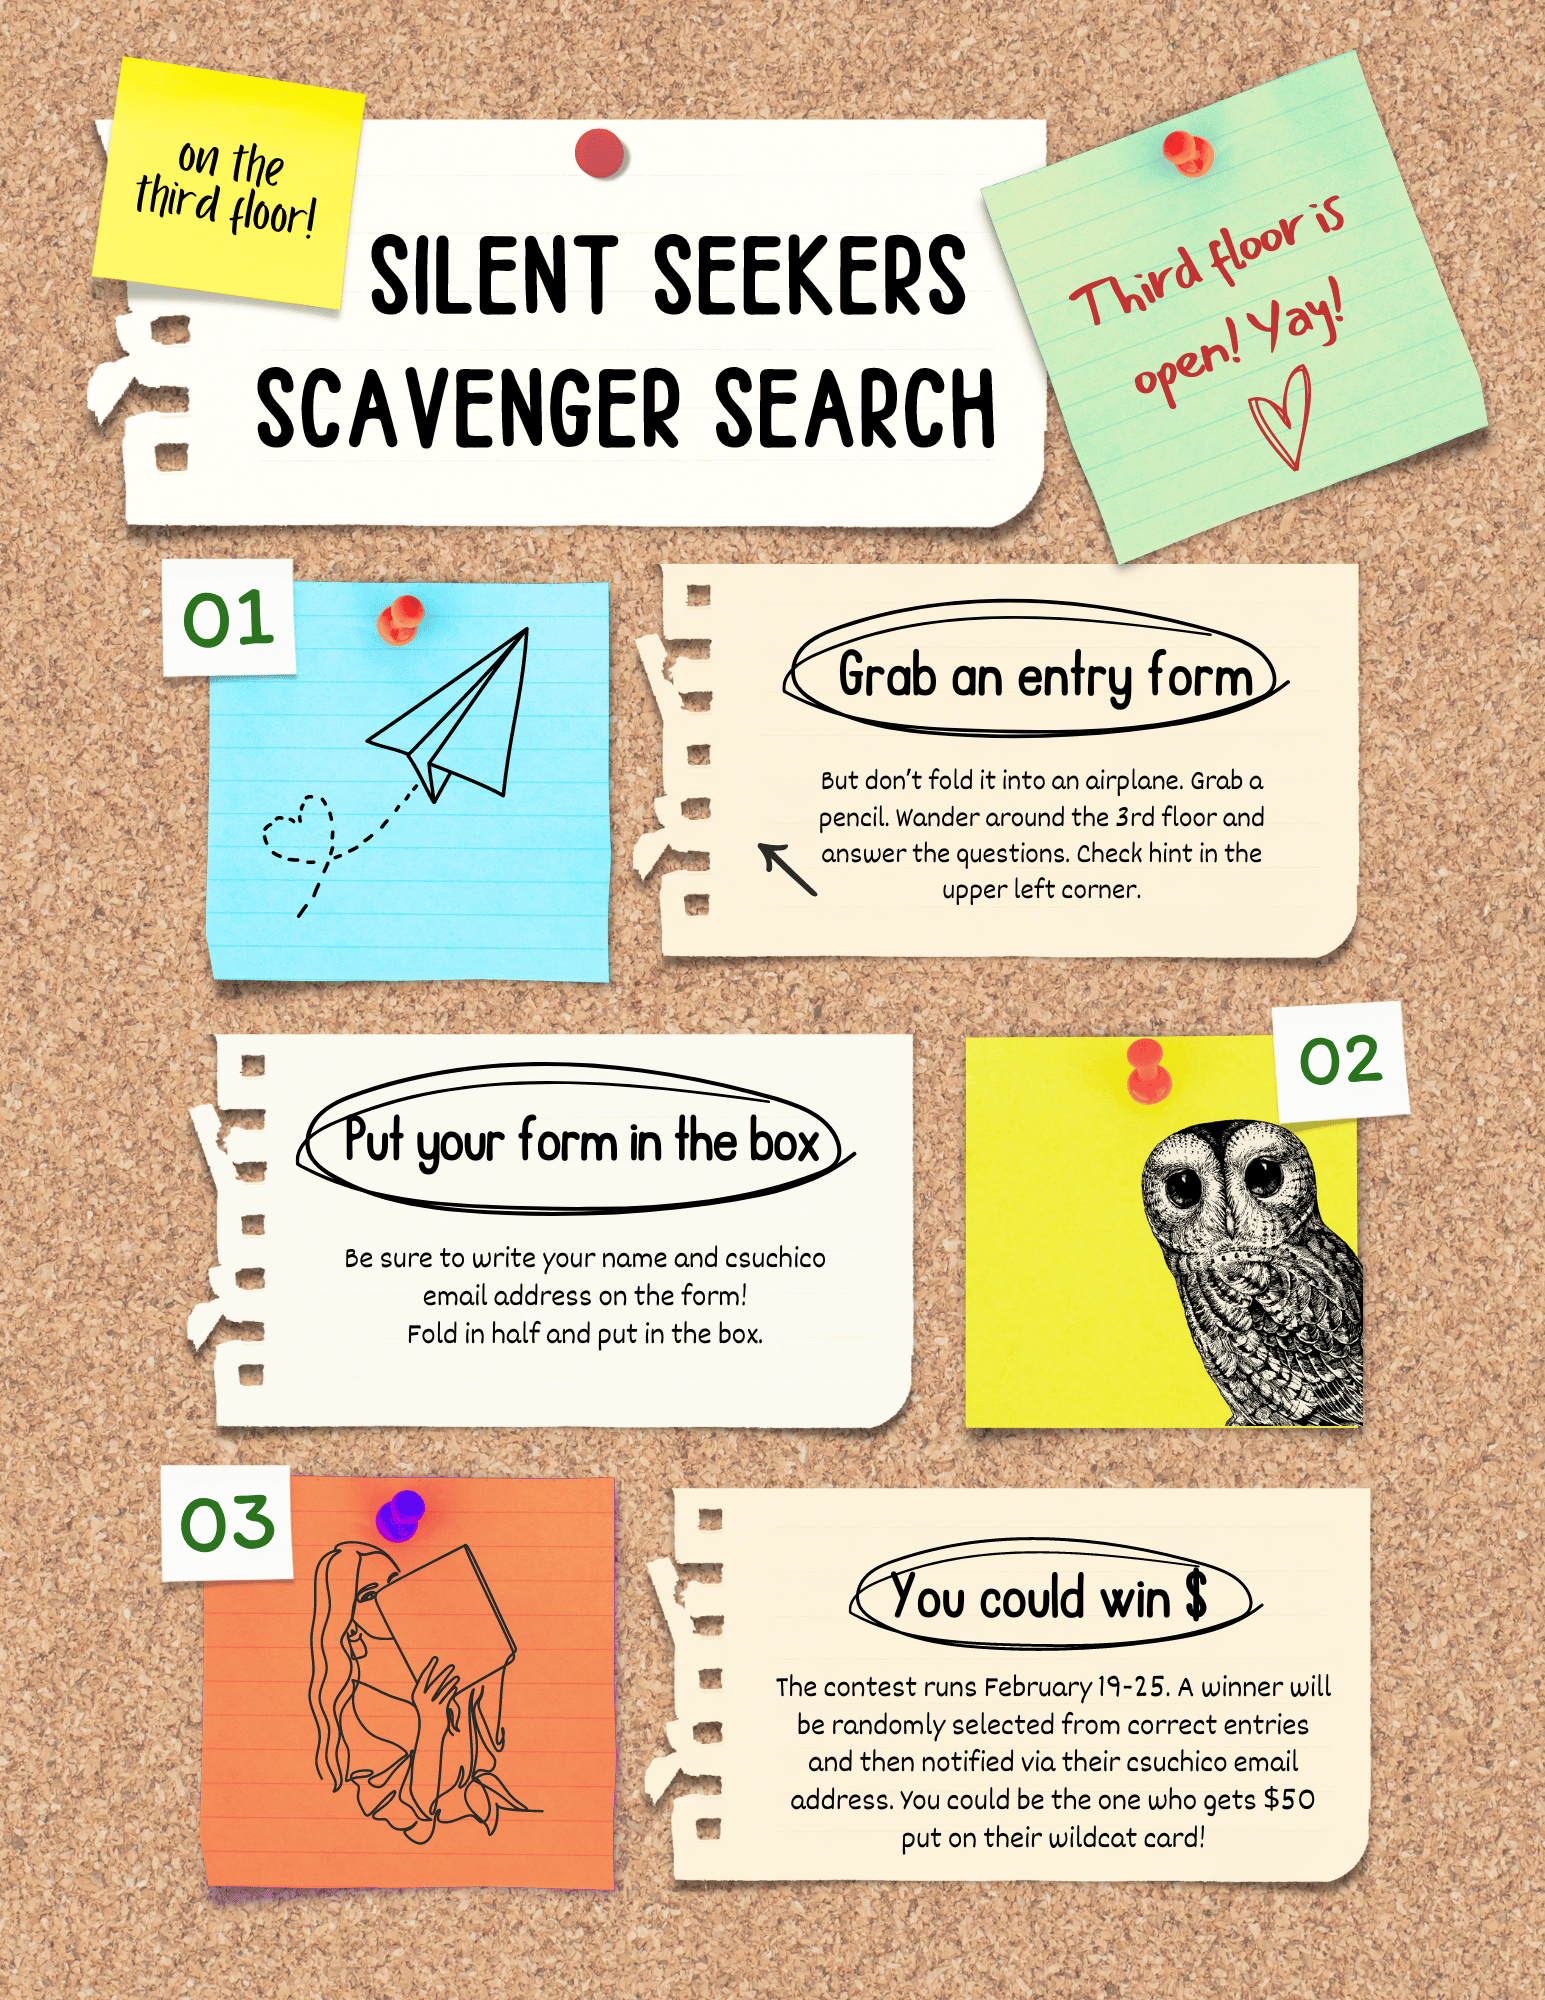 Silent Seekers Scavenger Search Flier